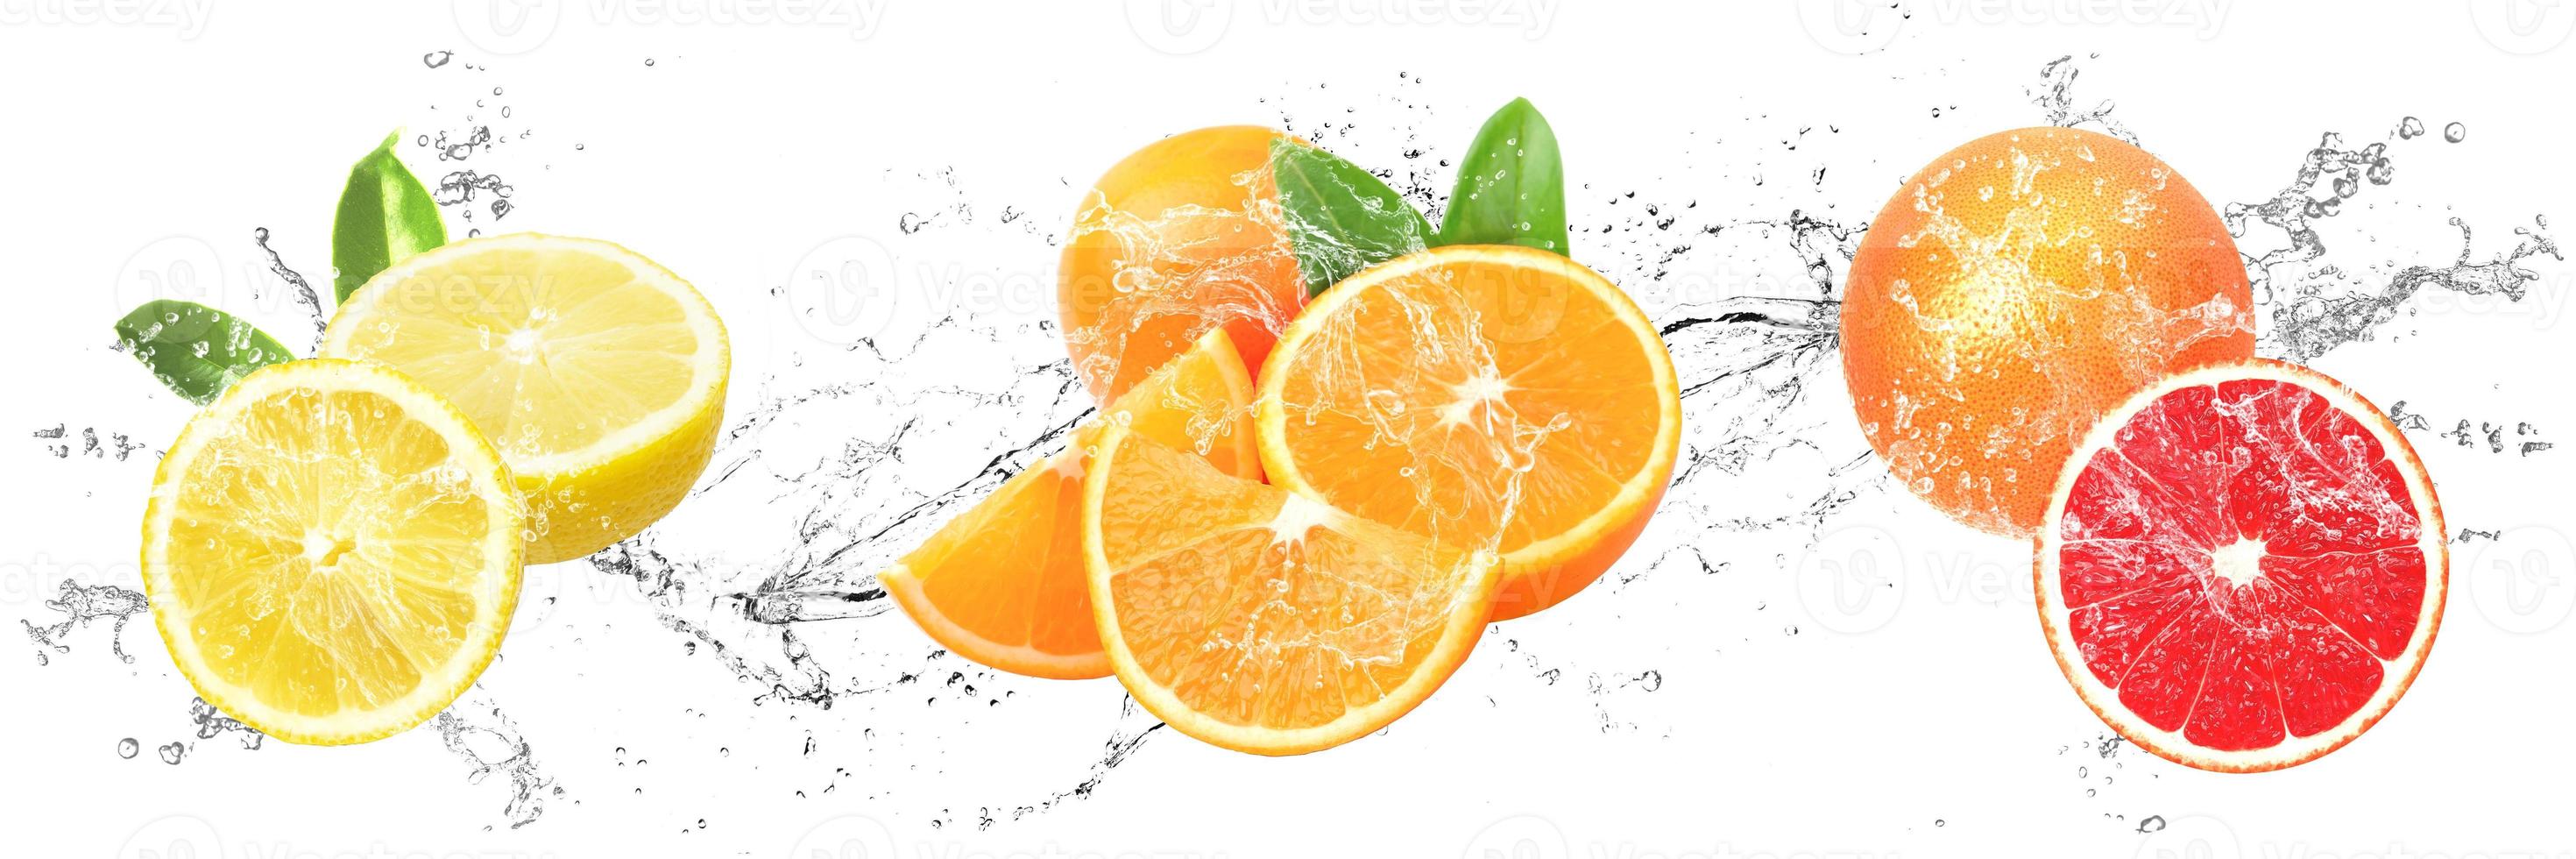 fruits frais avec des éclaboussures d'eau sur fond blanc isolé. citron, orange et pamplemousse photo